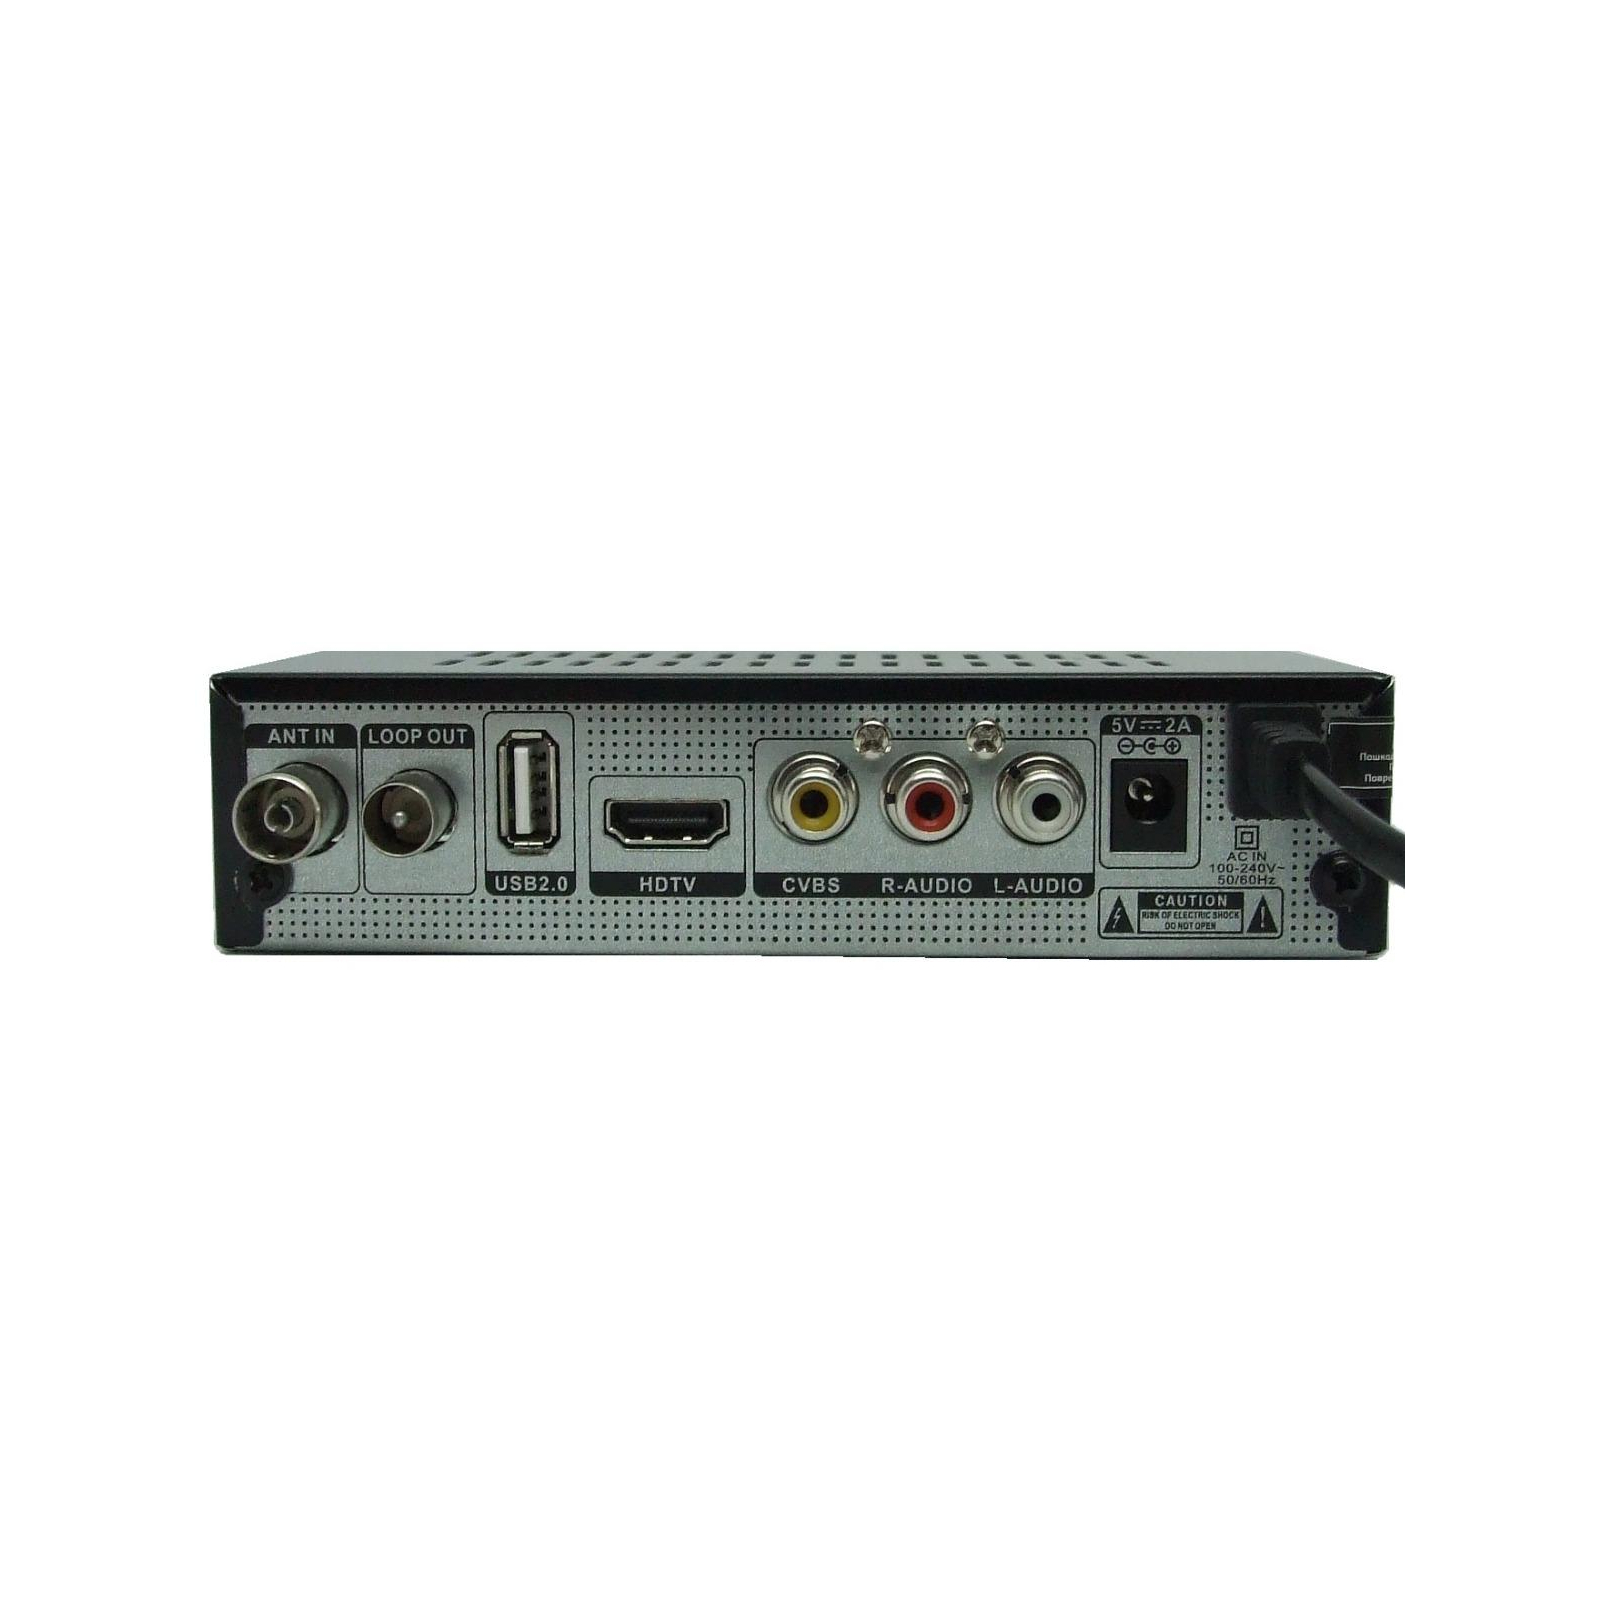 ТВ тюнер Astro DVB-T, DVB-T2, + USB-port (TA-24) зображення 2